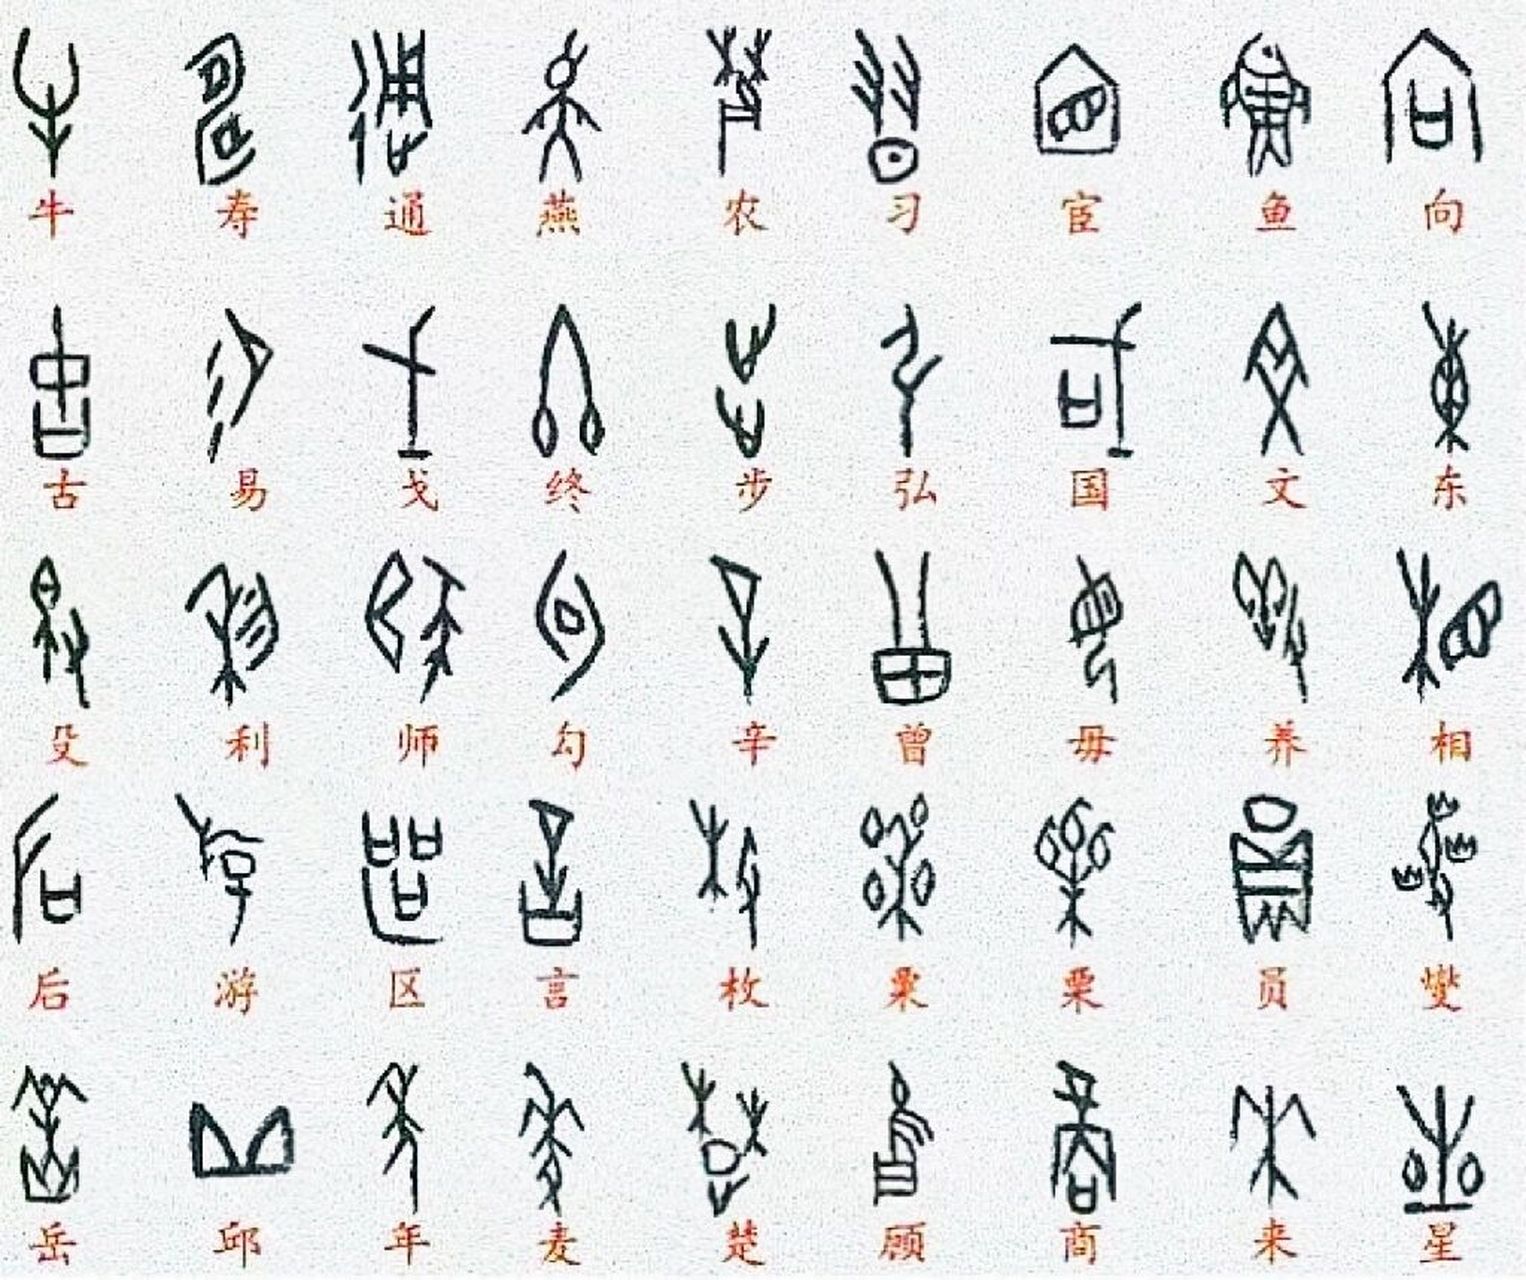 常用字甲骨文对照表 94已发现的殷墟甲骨文里,有大量指事字,象形字